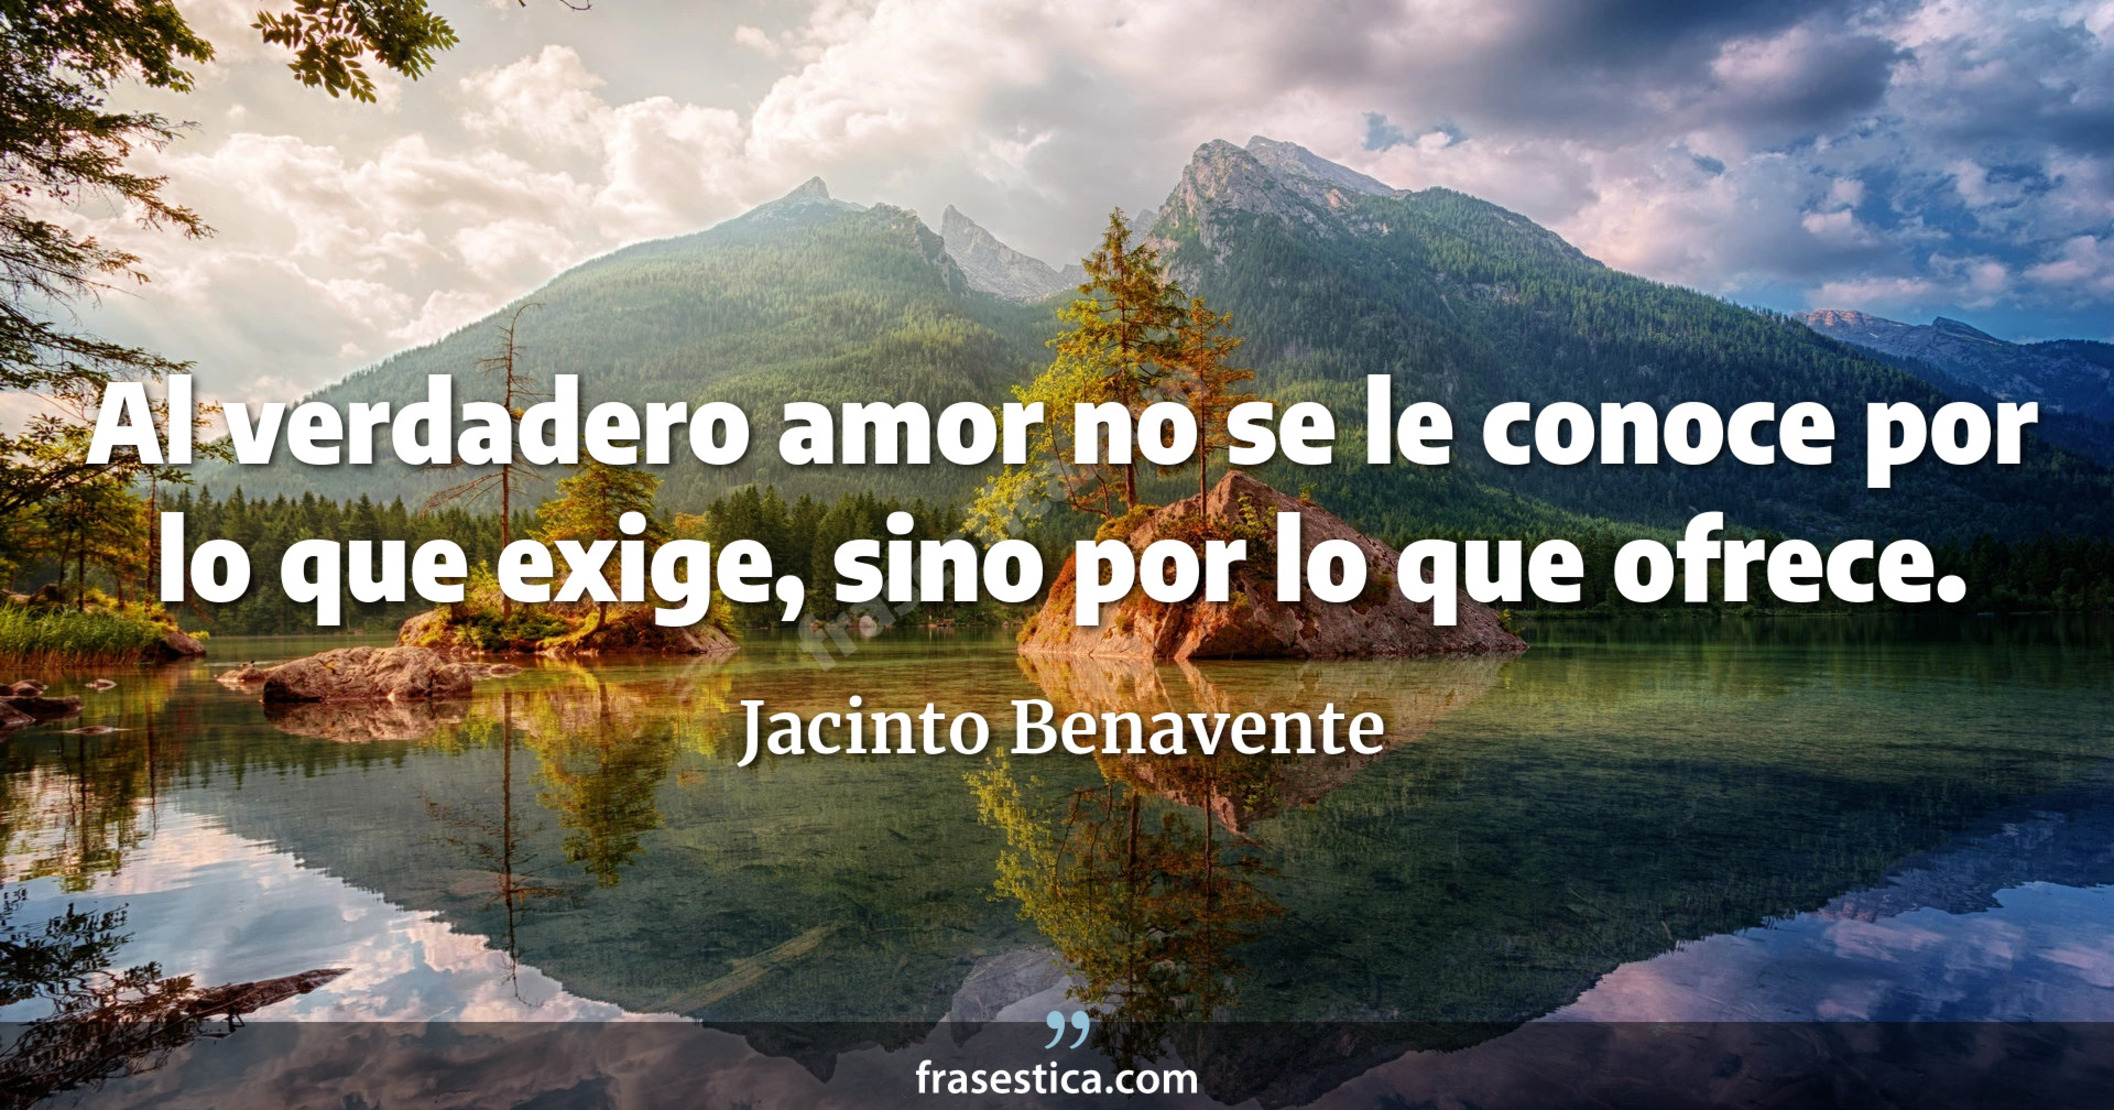 Al verdadero amor no se le conoce por lo que exige, sino por lo que ofrece. - Jacinto Benavente